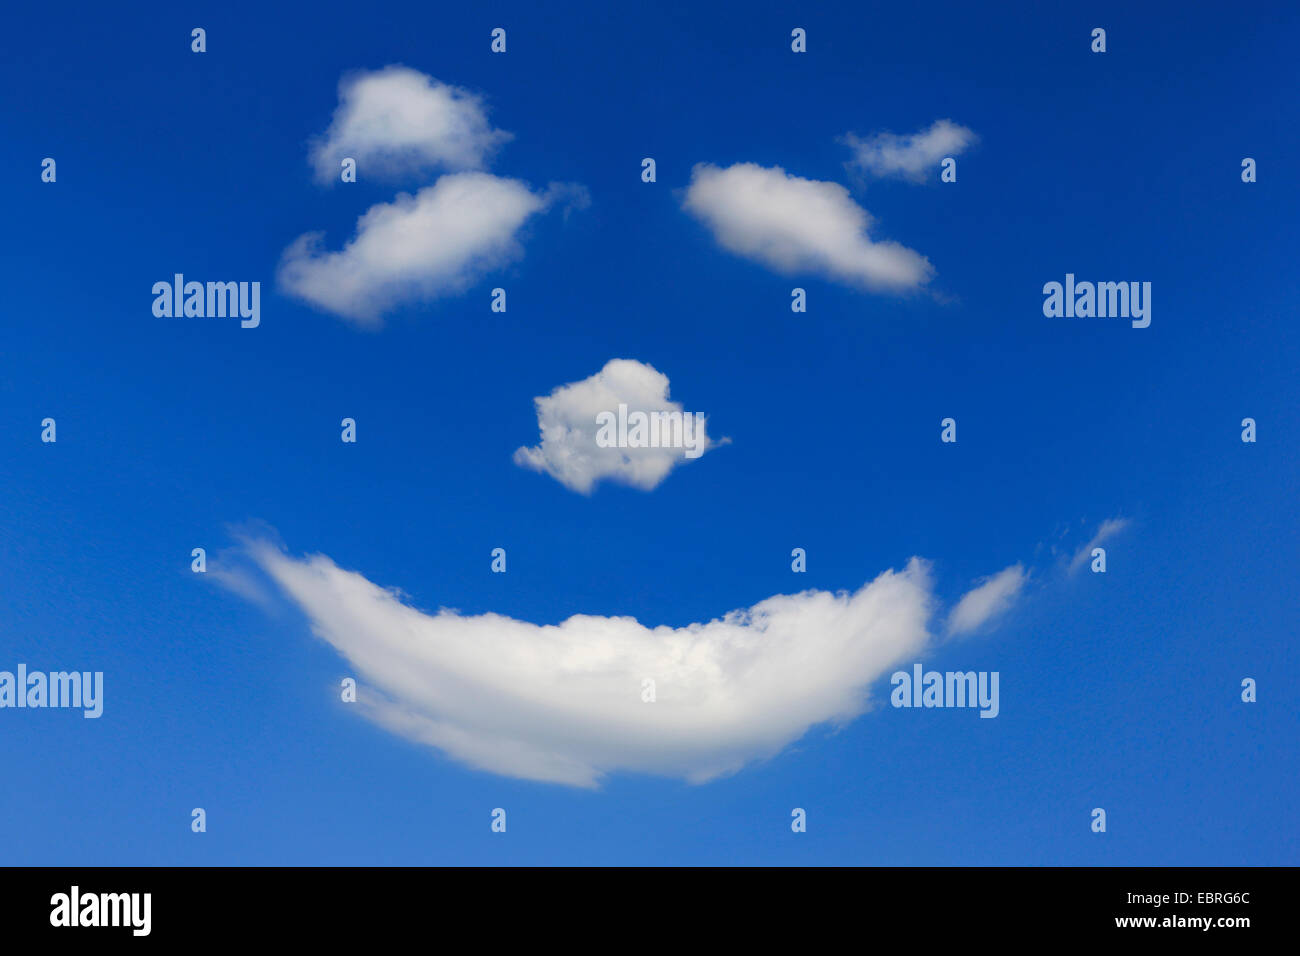 Cara sonriente de nubes en el cielo azul Foto de stock